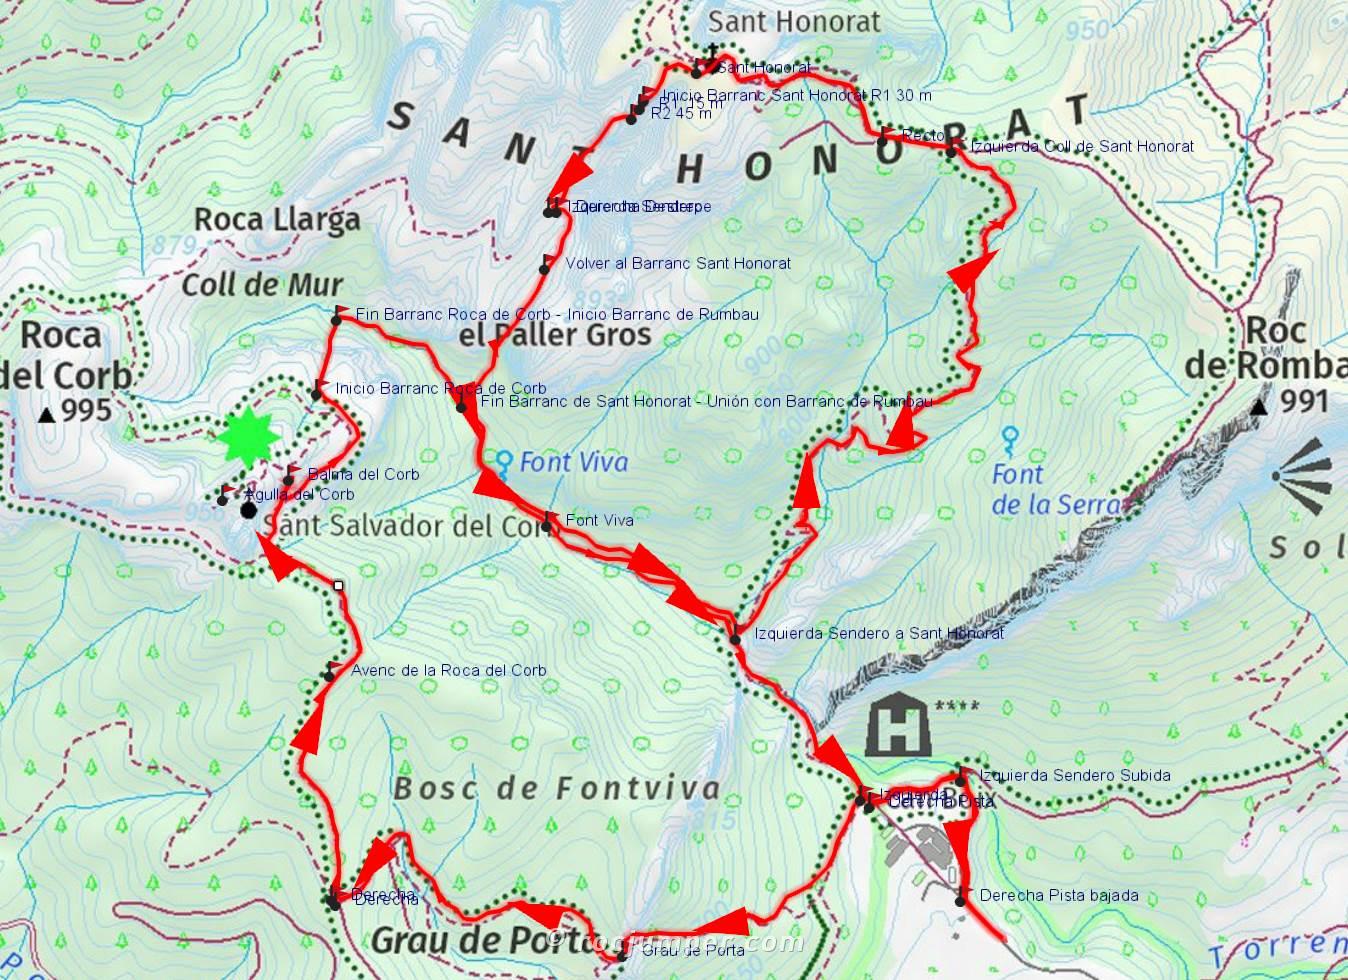 Mapa - Barranc Roca de Corb - Barranc Rumbau - Barranc Sant Honorat - RocJumper